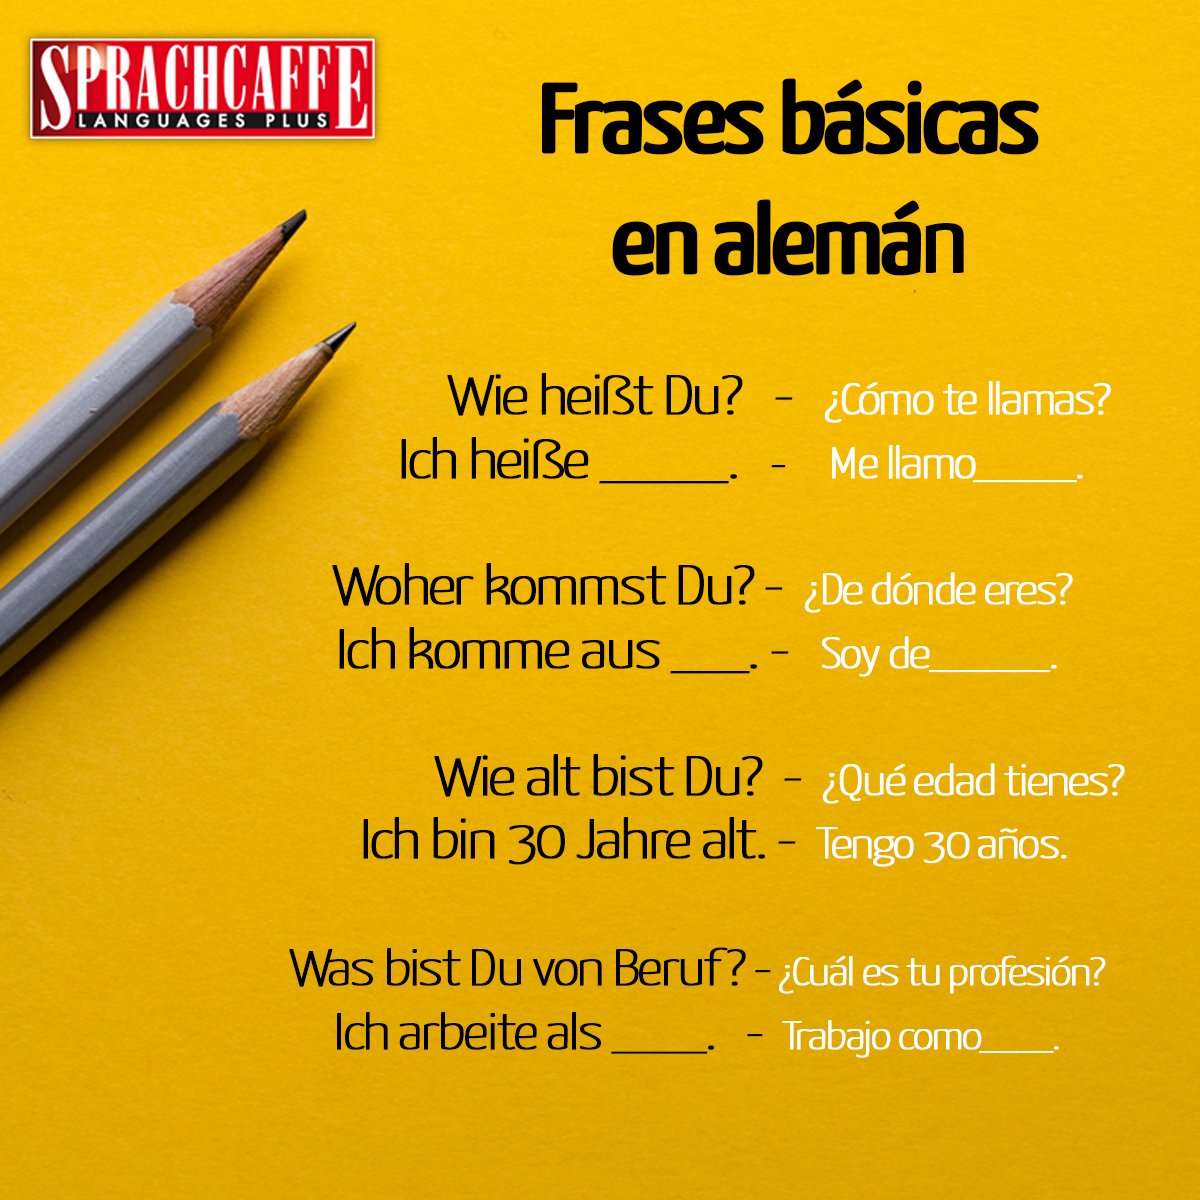 Sprachcaffe España on Twitter: 